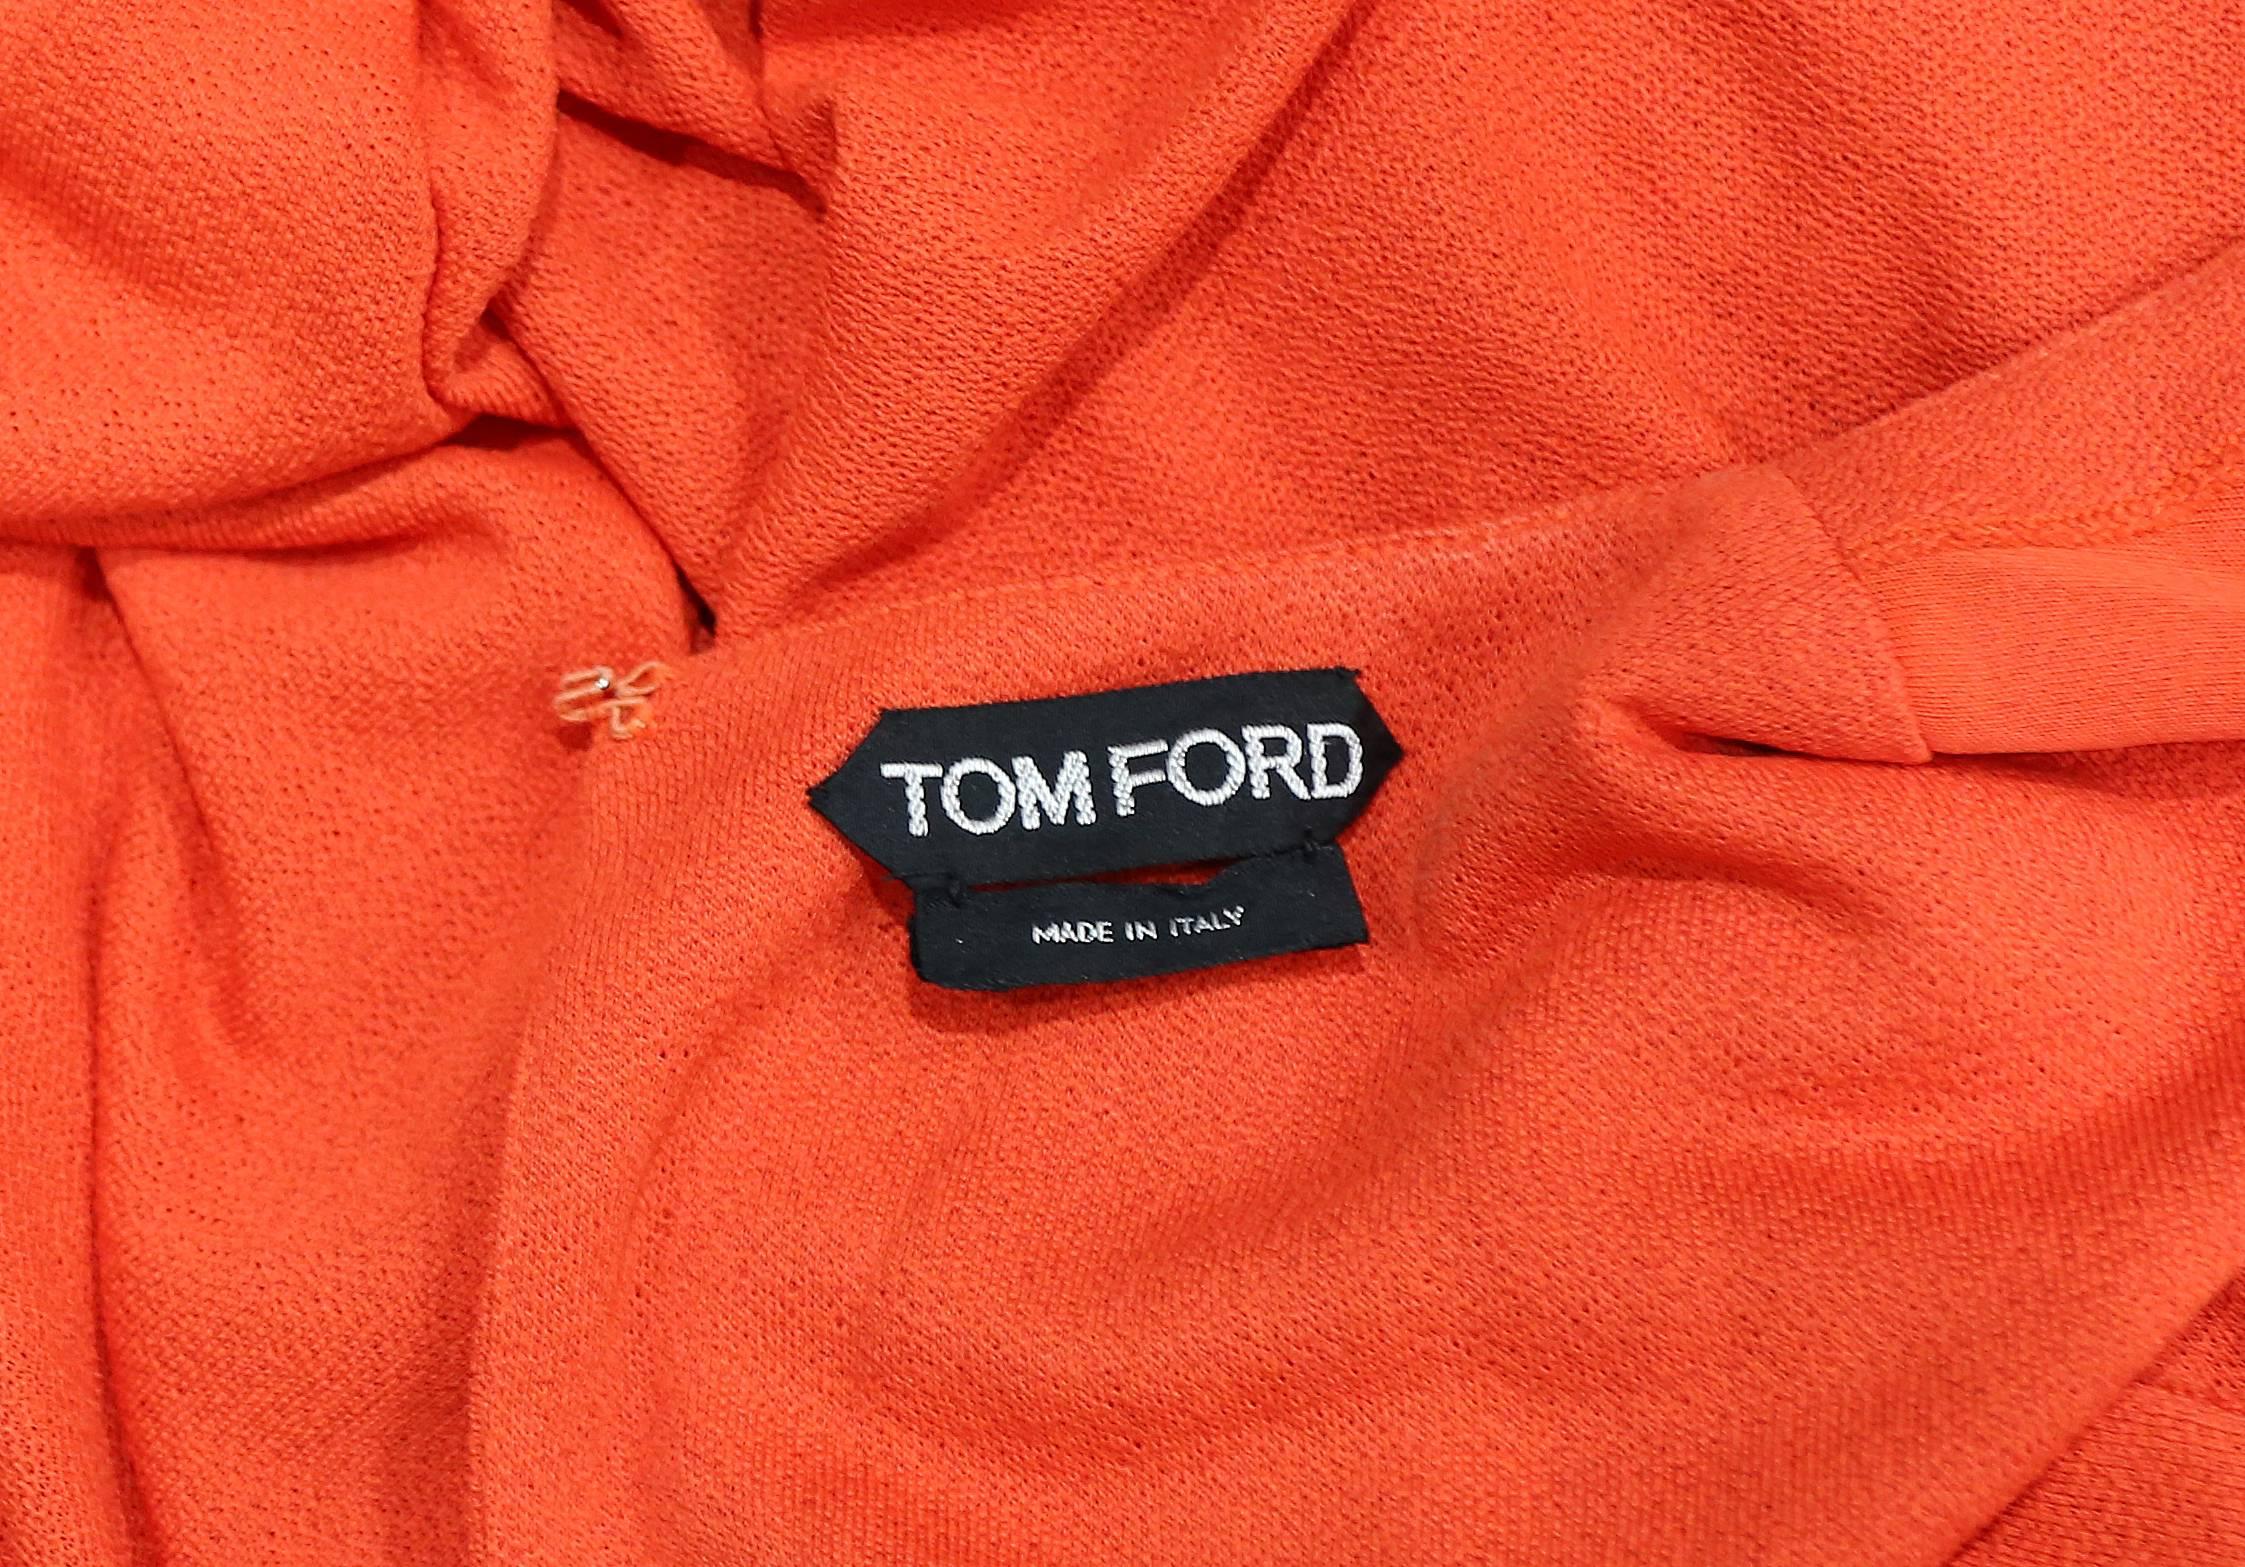 Tom Ford embellished pop art inspired coral evening dress, c. 2013 6